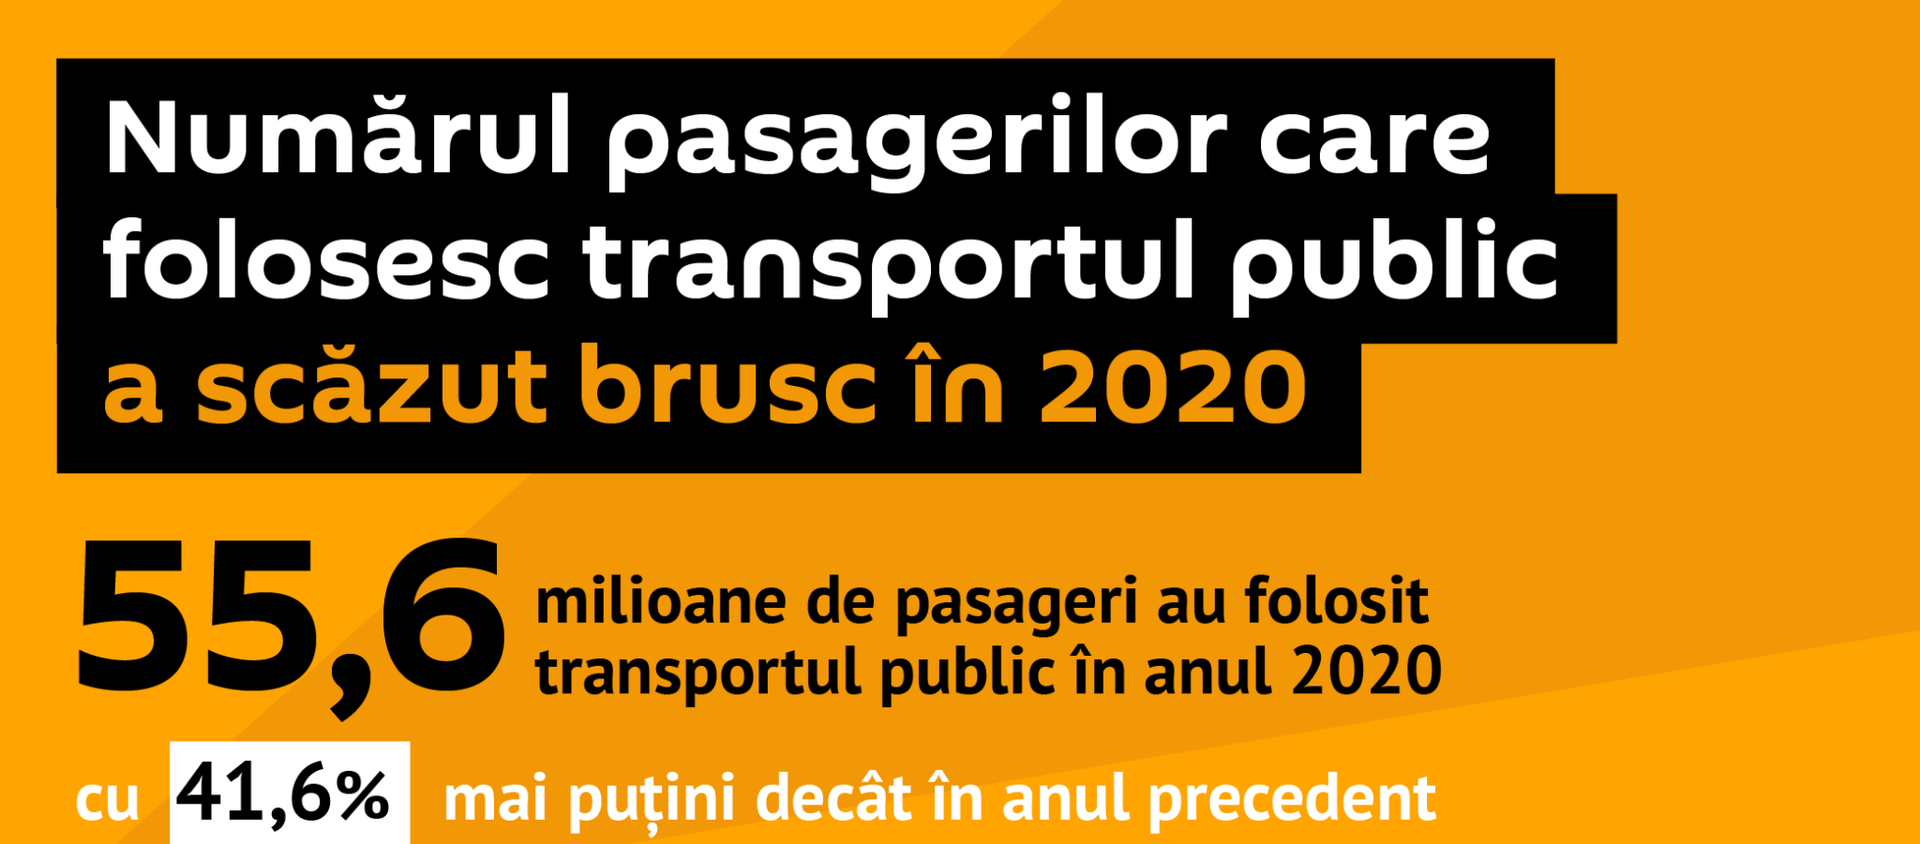 Numărul pasagerilor care folosesc transportul public a scăzut brusc în 2020 - Sputnik Moldova, 1920, 17.02.2021